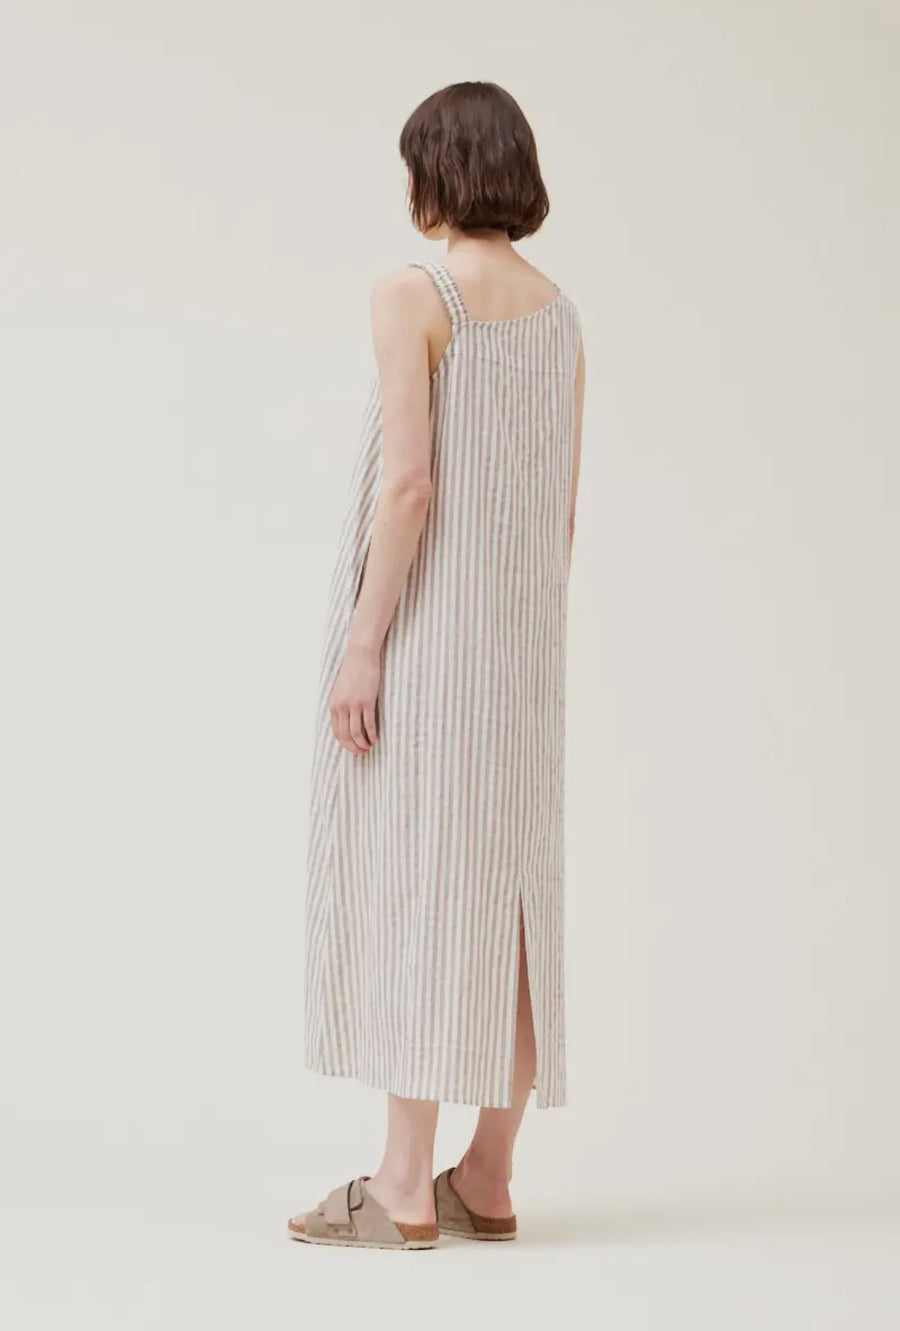 Asymmetrical Stripe Dress- Tan